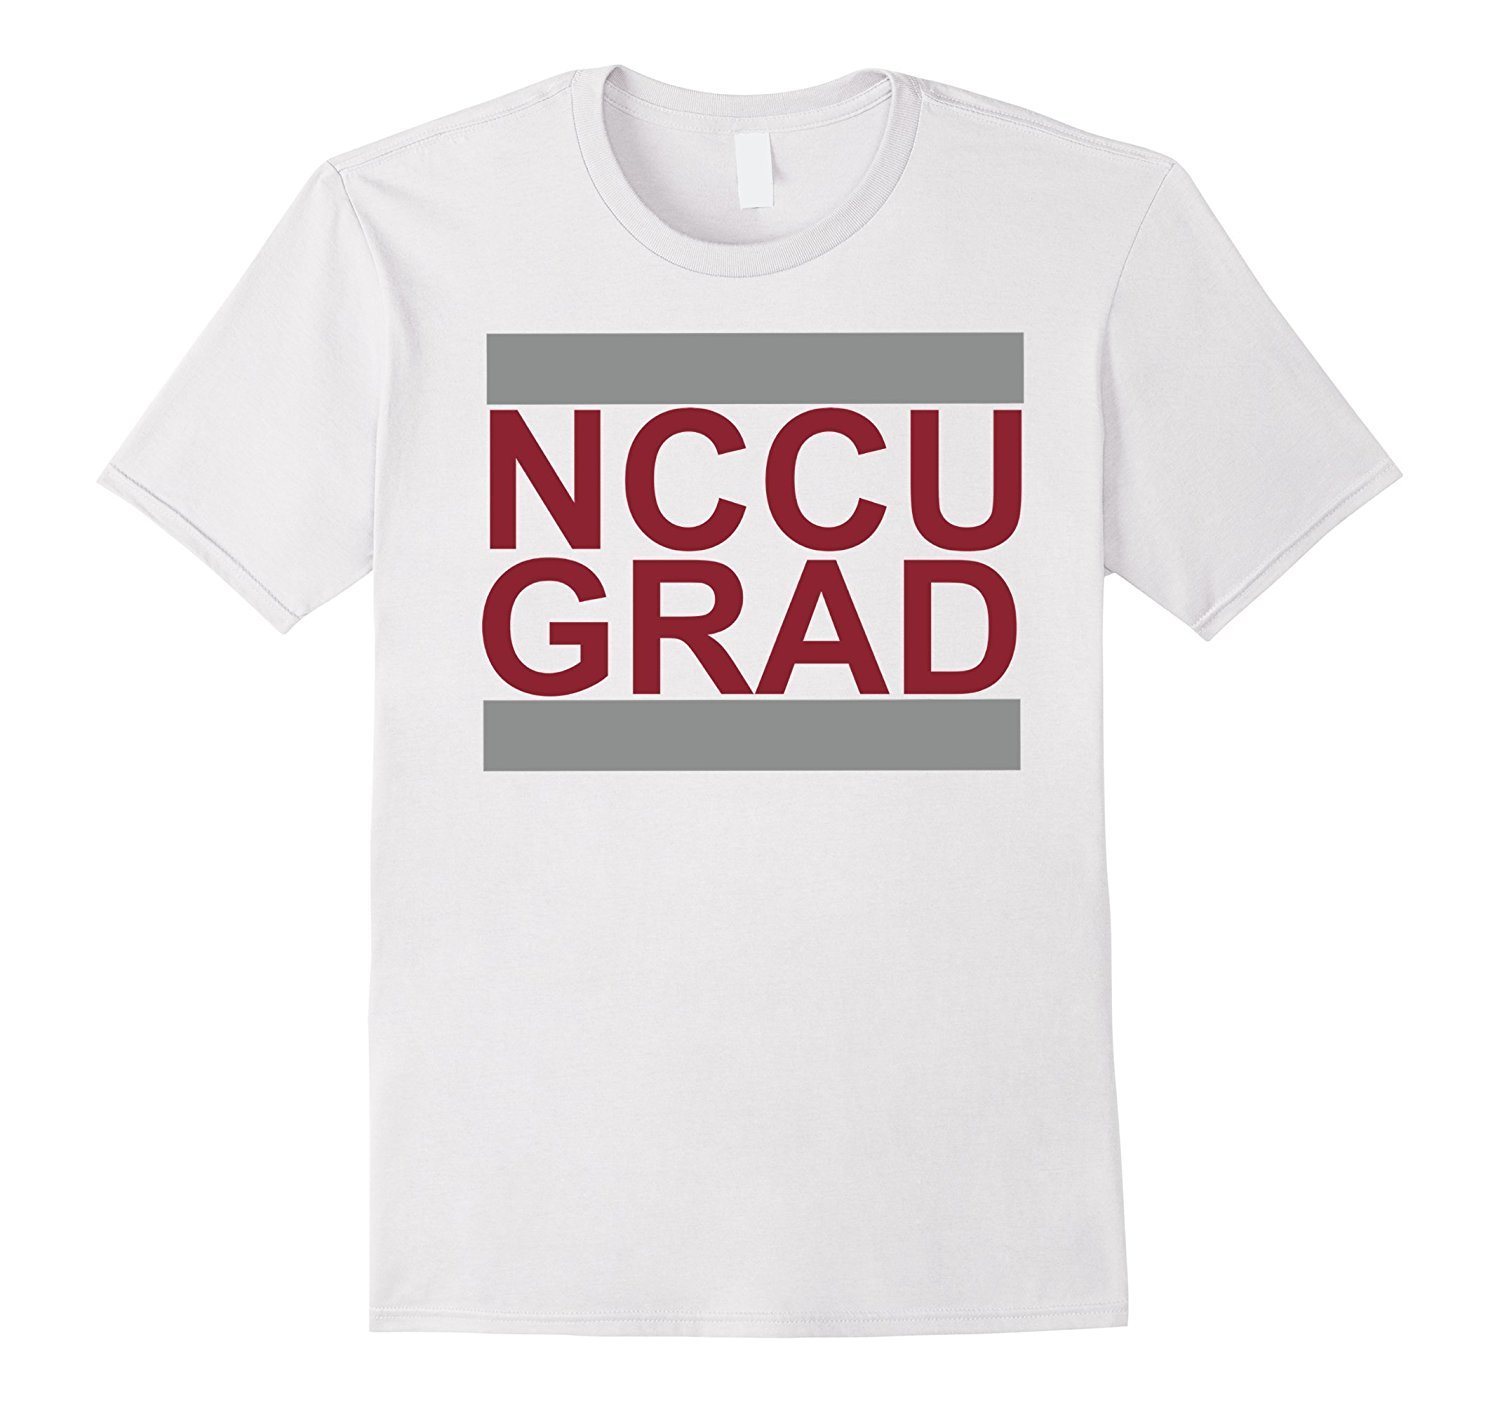 NCCU GRAD Alumni T-Shirt 1